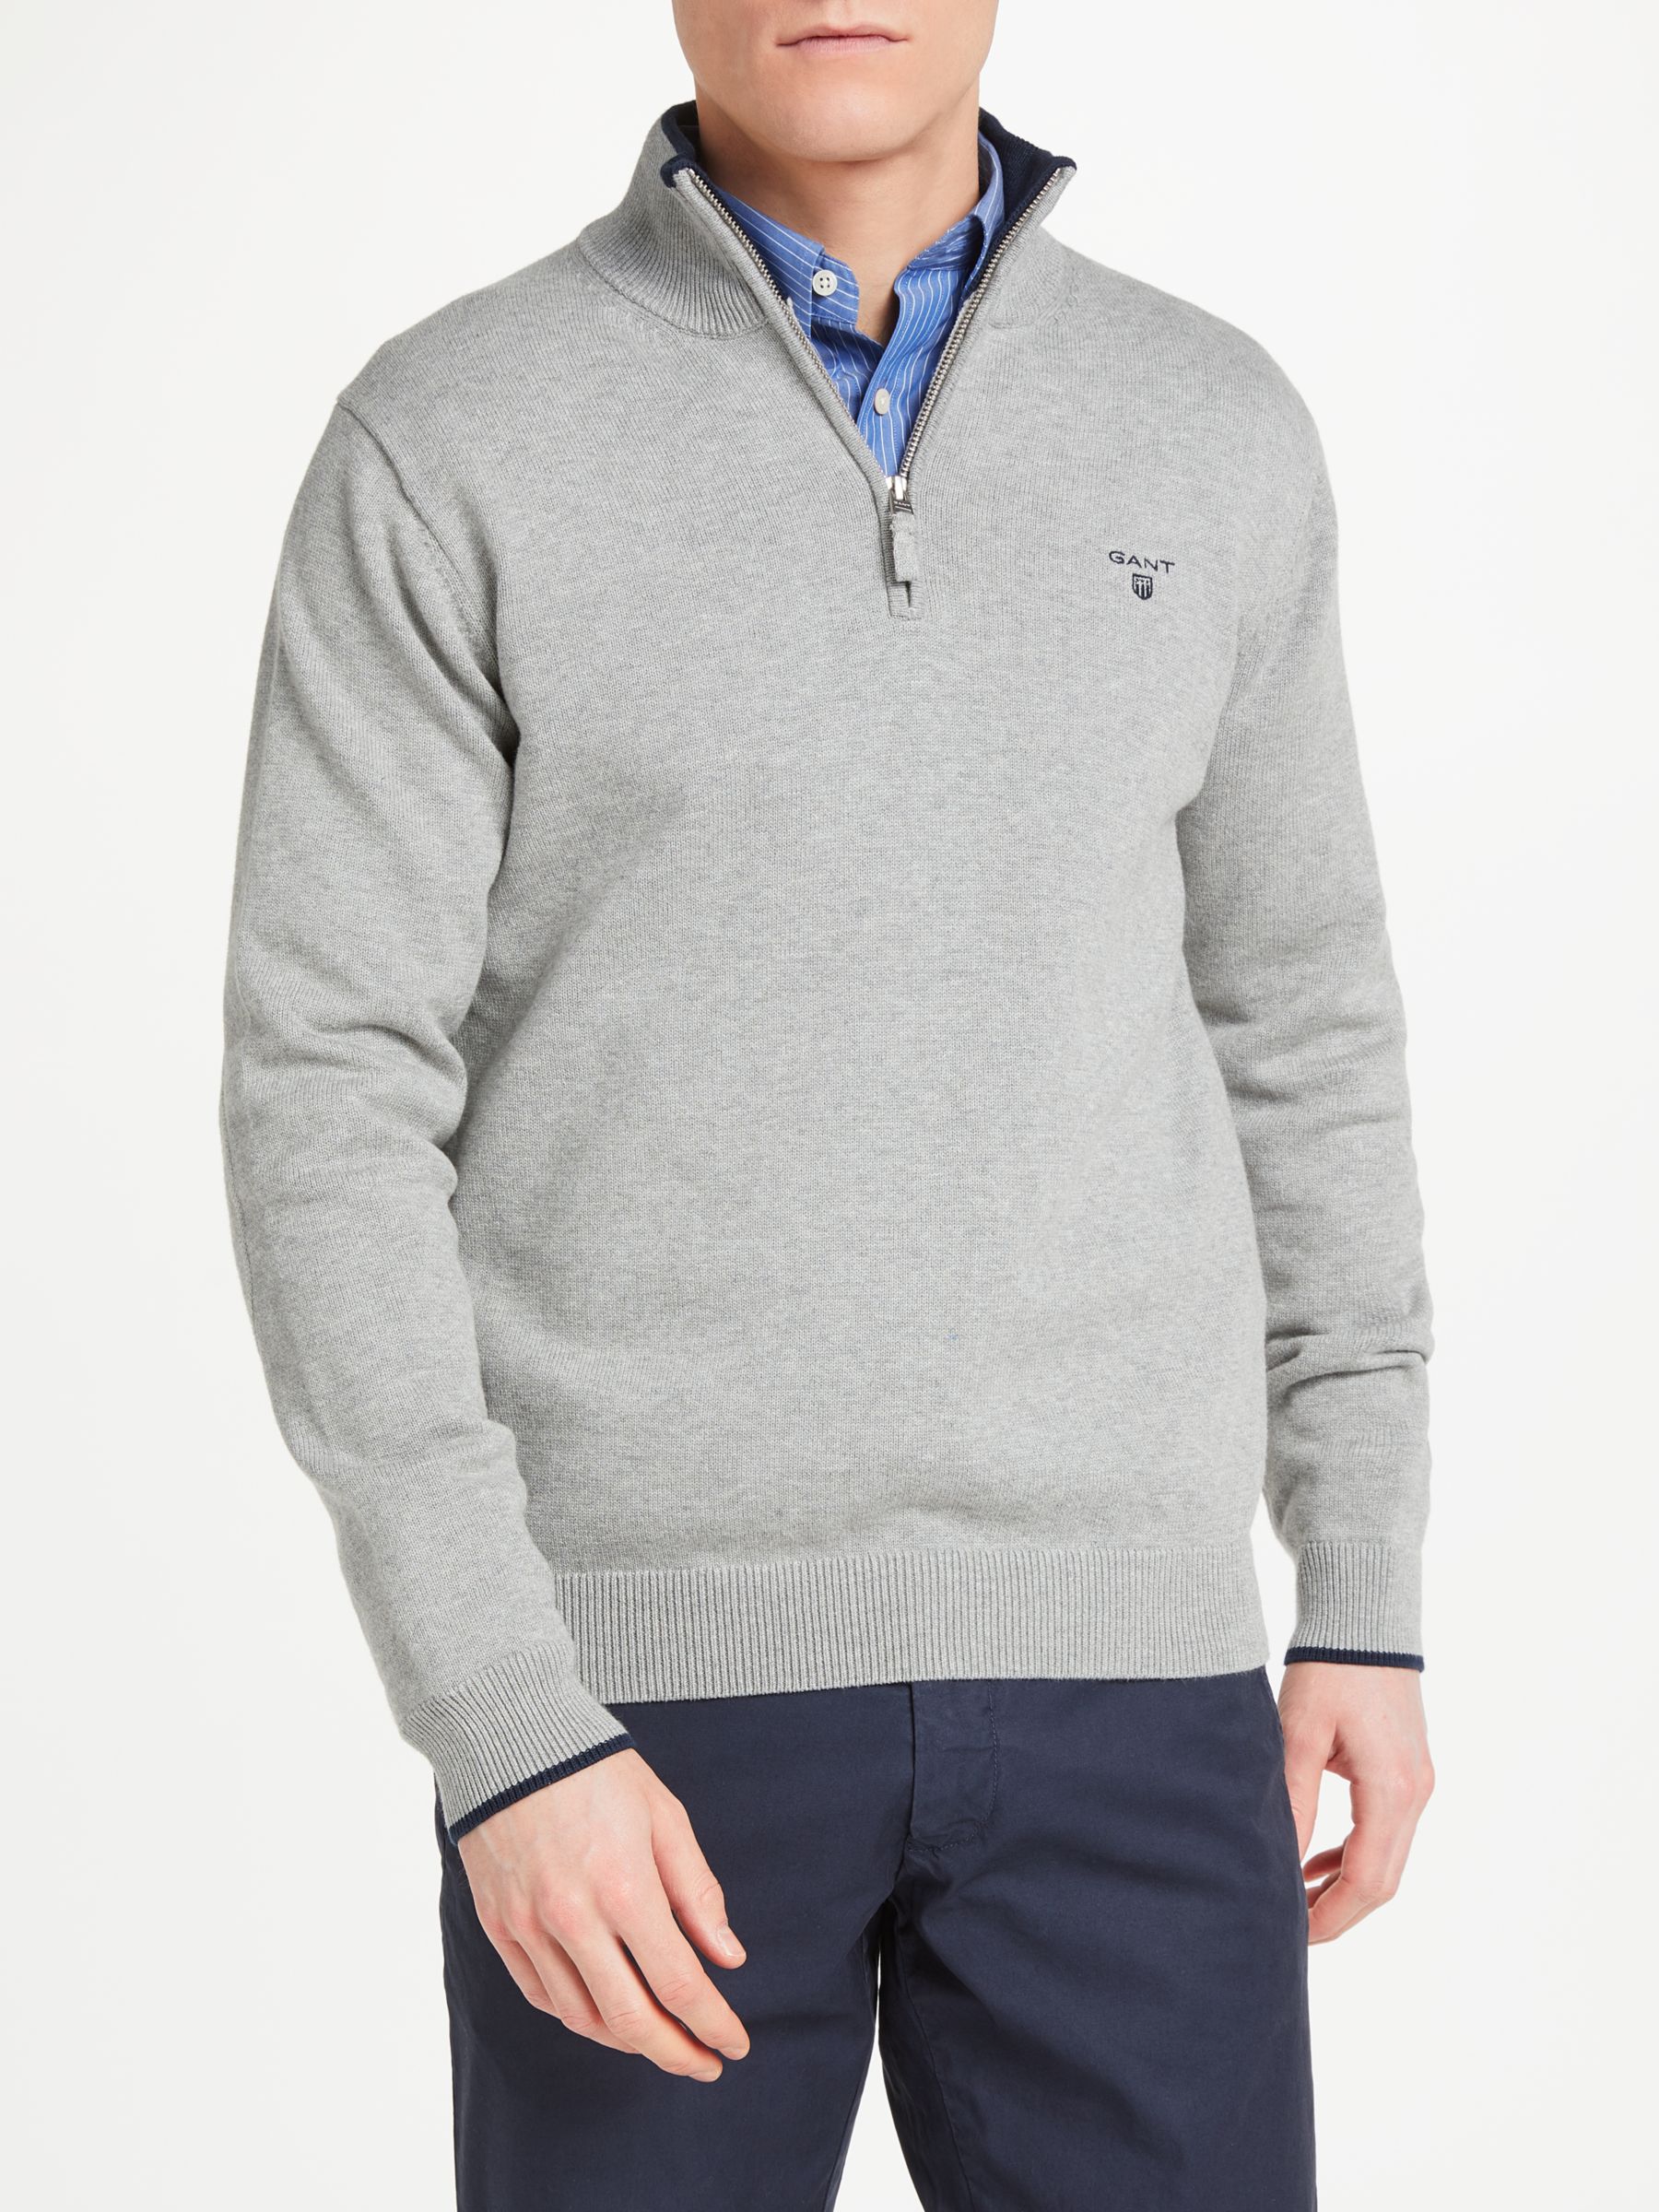 GANT Cotton Contrast Half Zip Sweatshirt, Grey, S